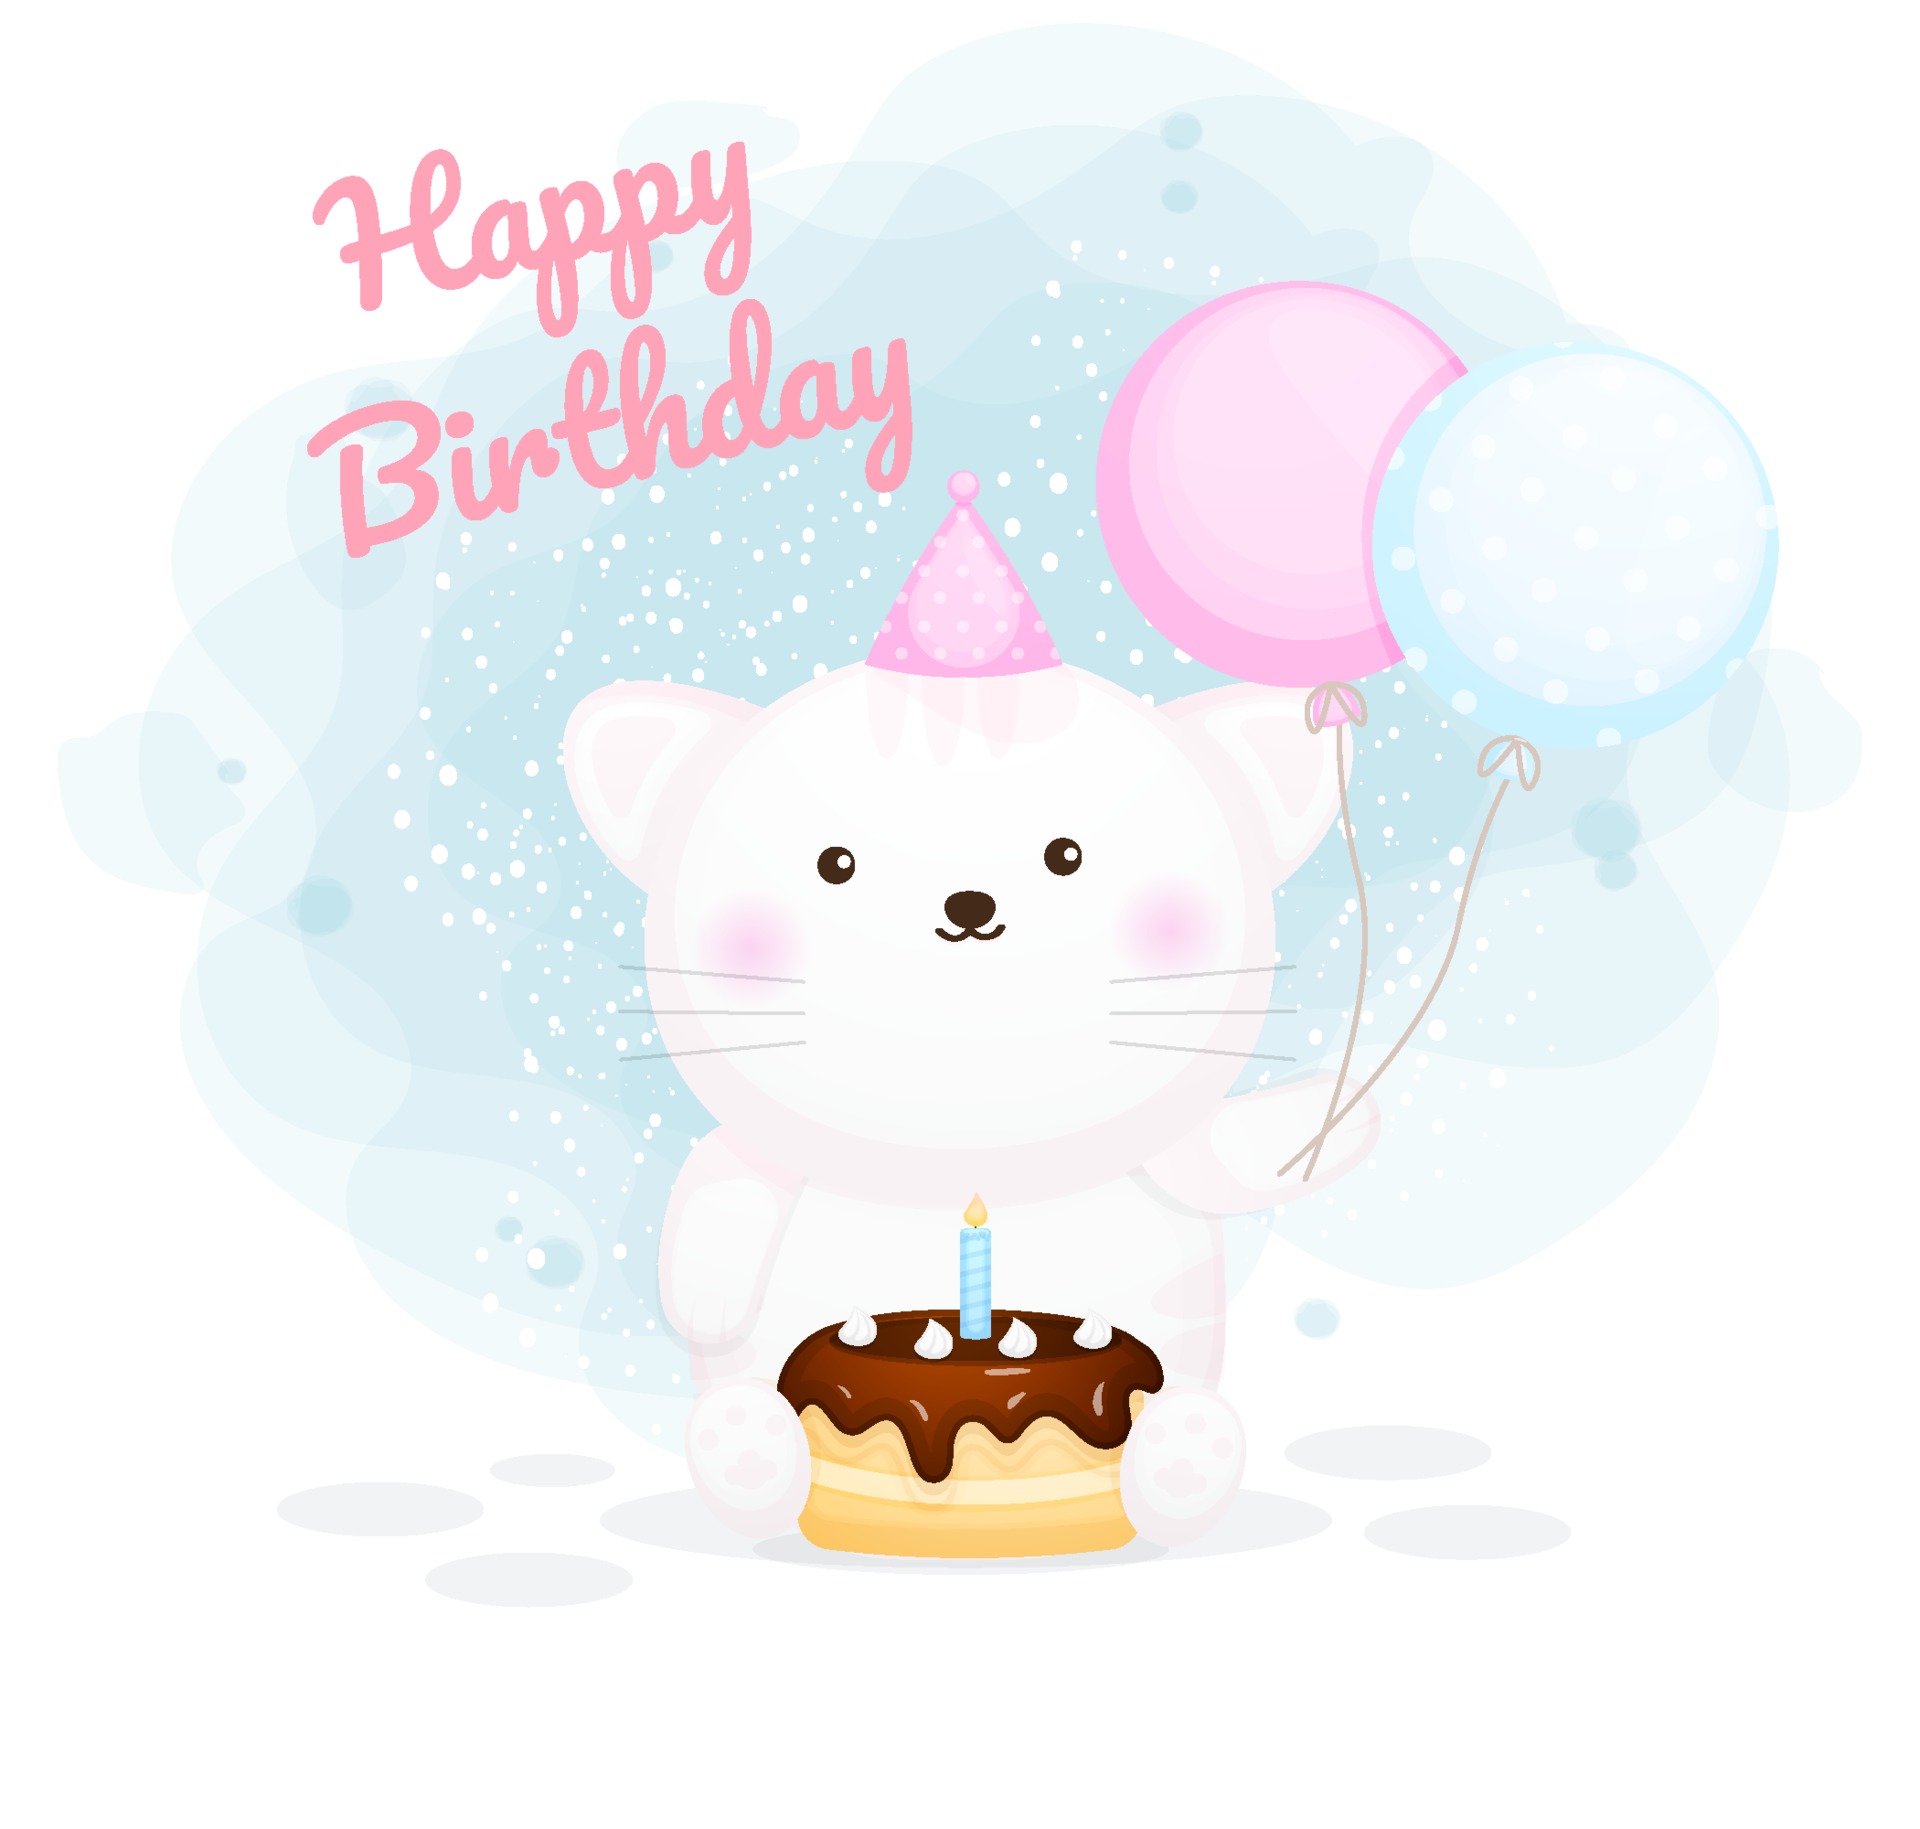 Happy birthday cute kitty cartoon character 2133980 Vector Art at Vecteezy